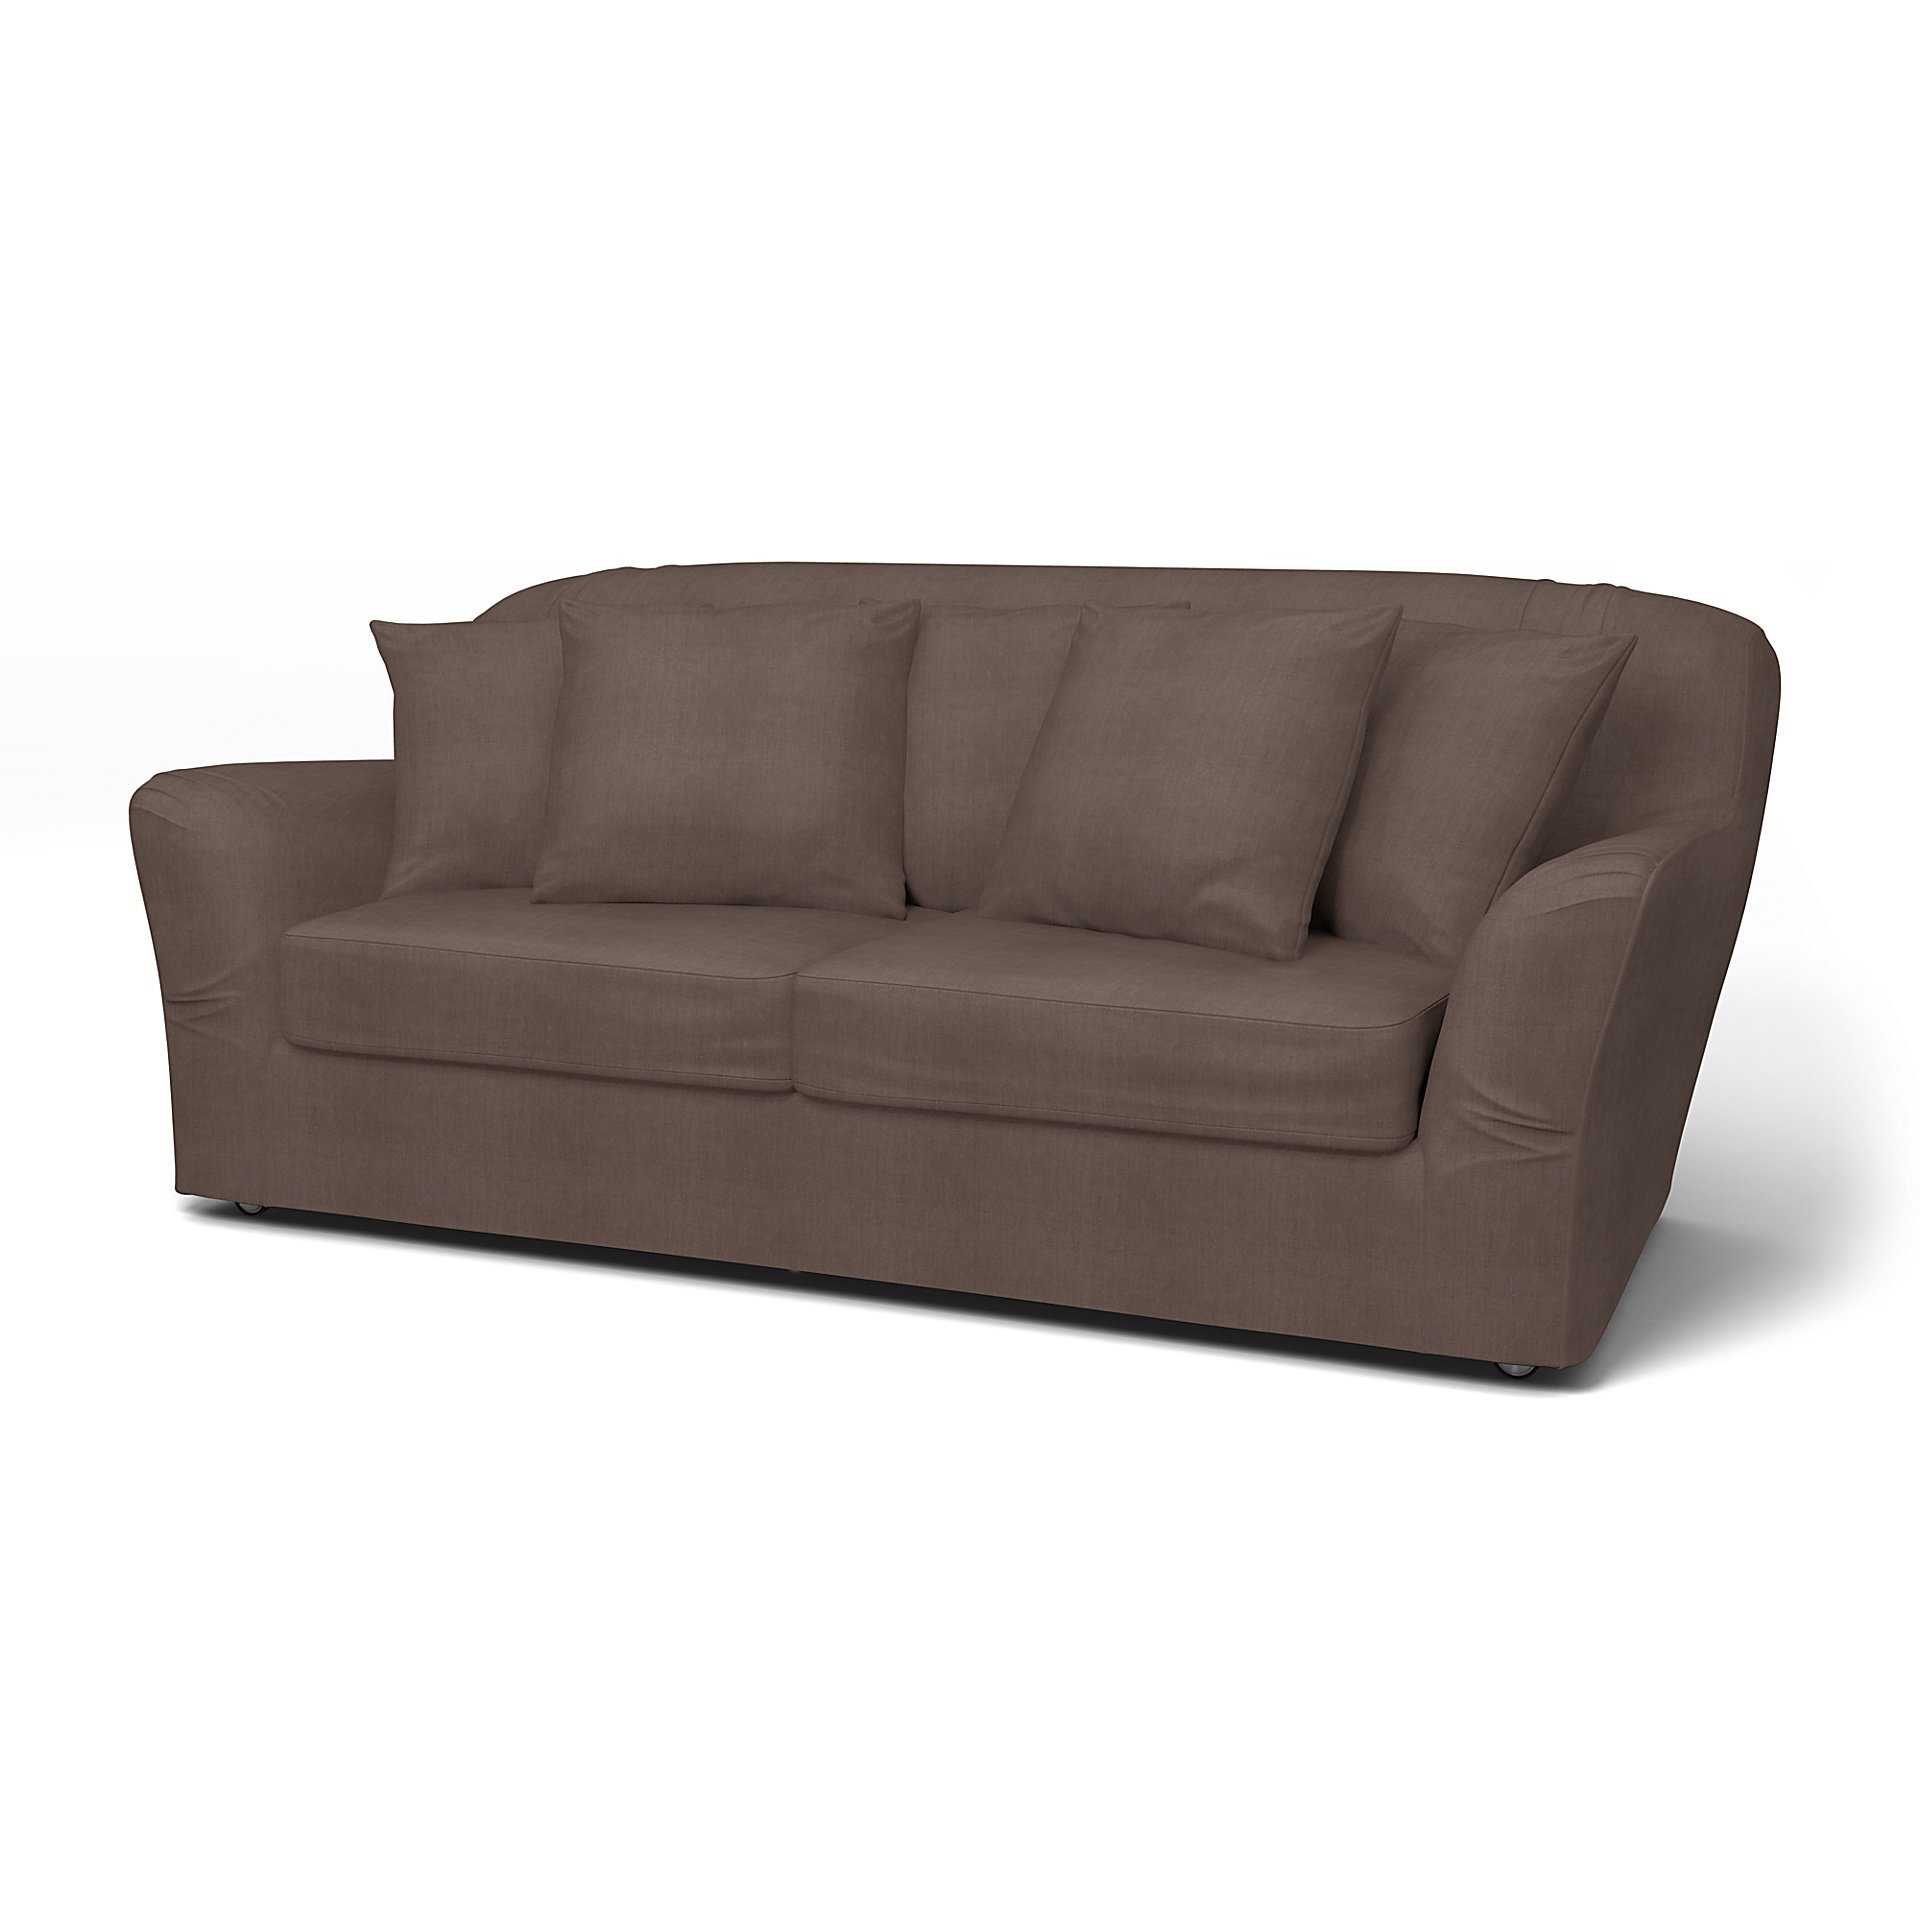 IKEA - Tomelilla Sofa Bed Cover (Small model), Cocoa, Linen - Bemz